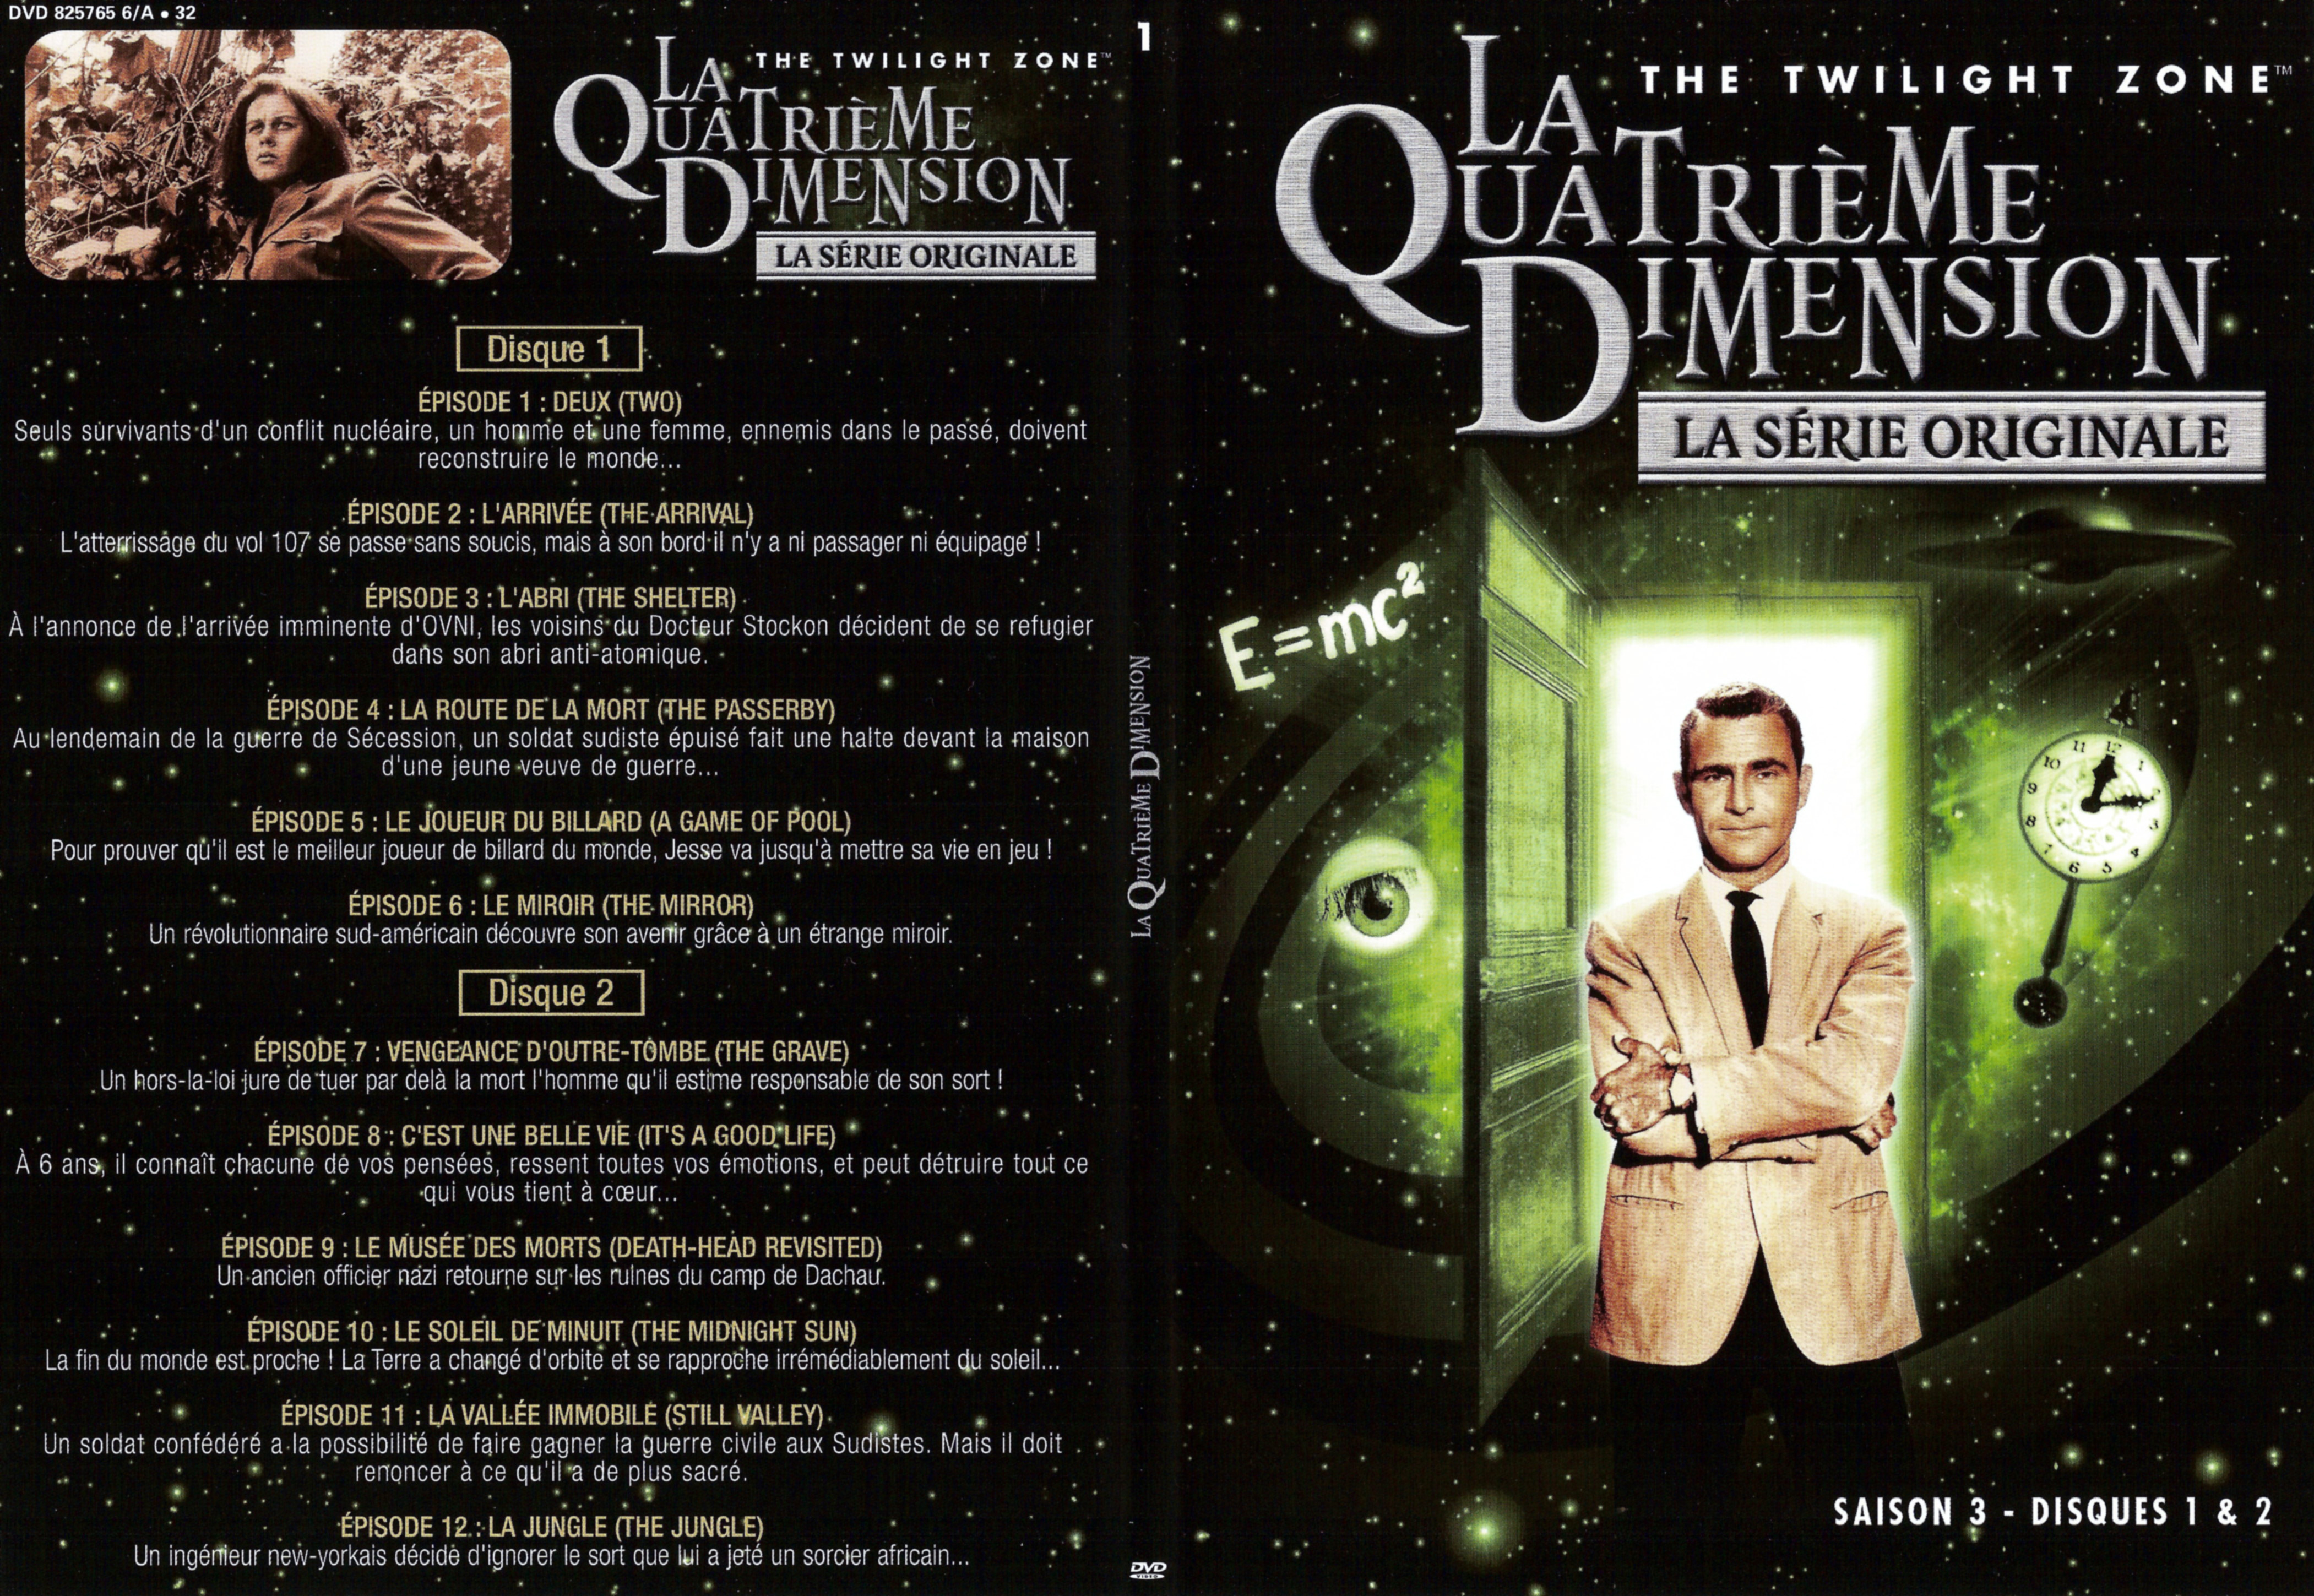 Jaquette DVD La quatrieme dimension Saison 3 vol 1